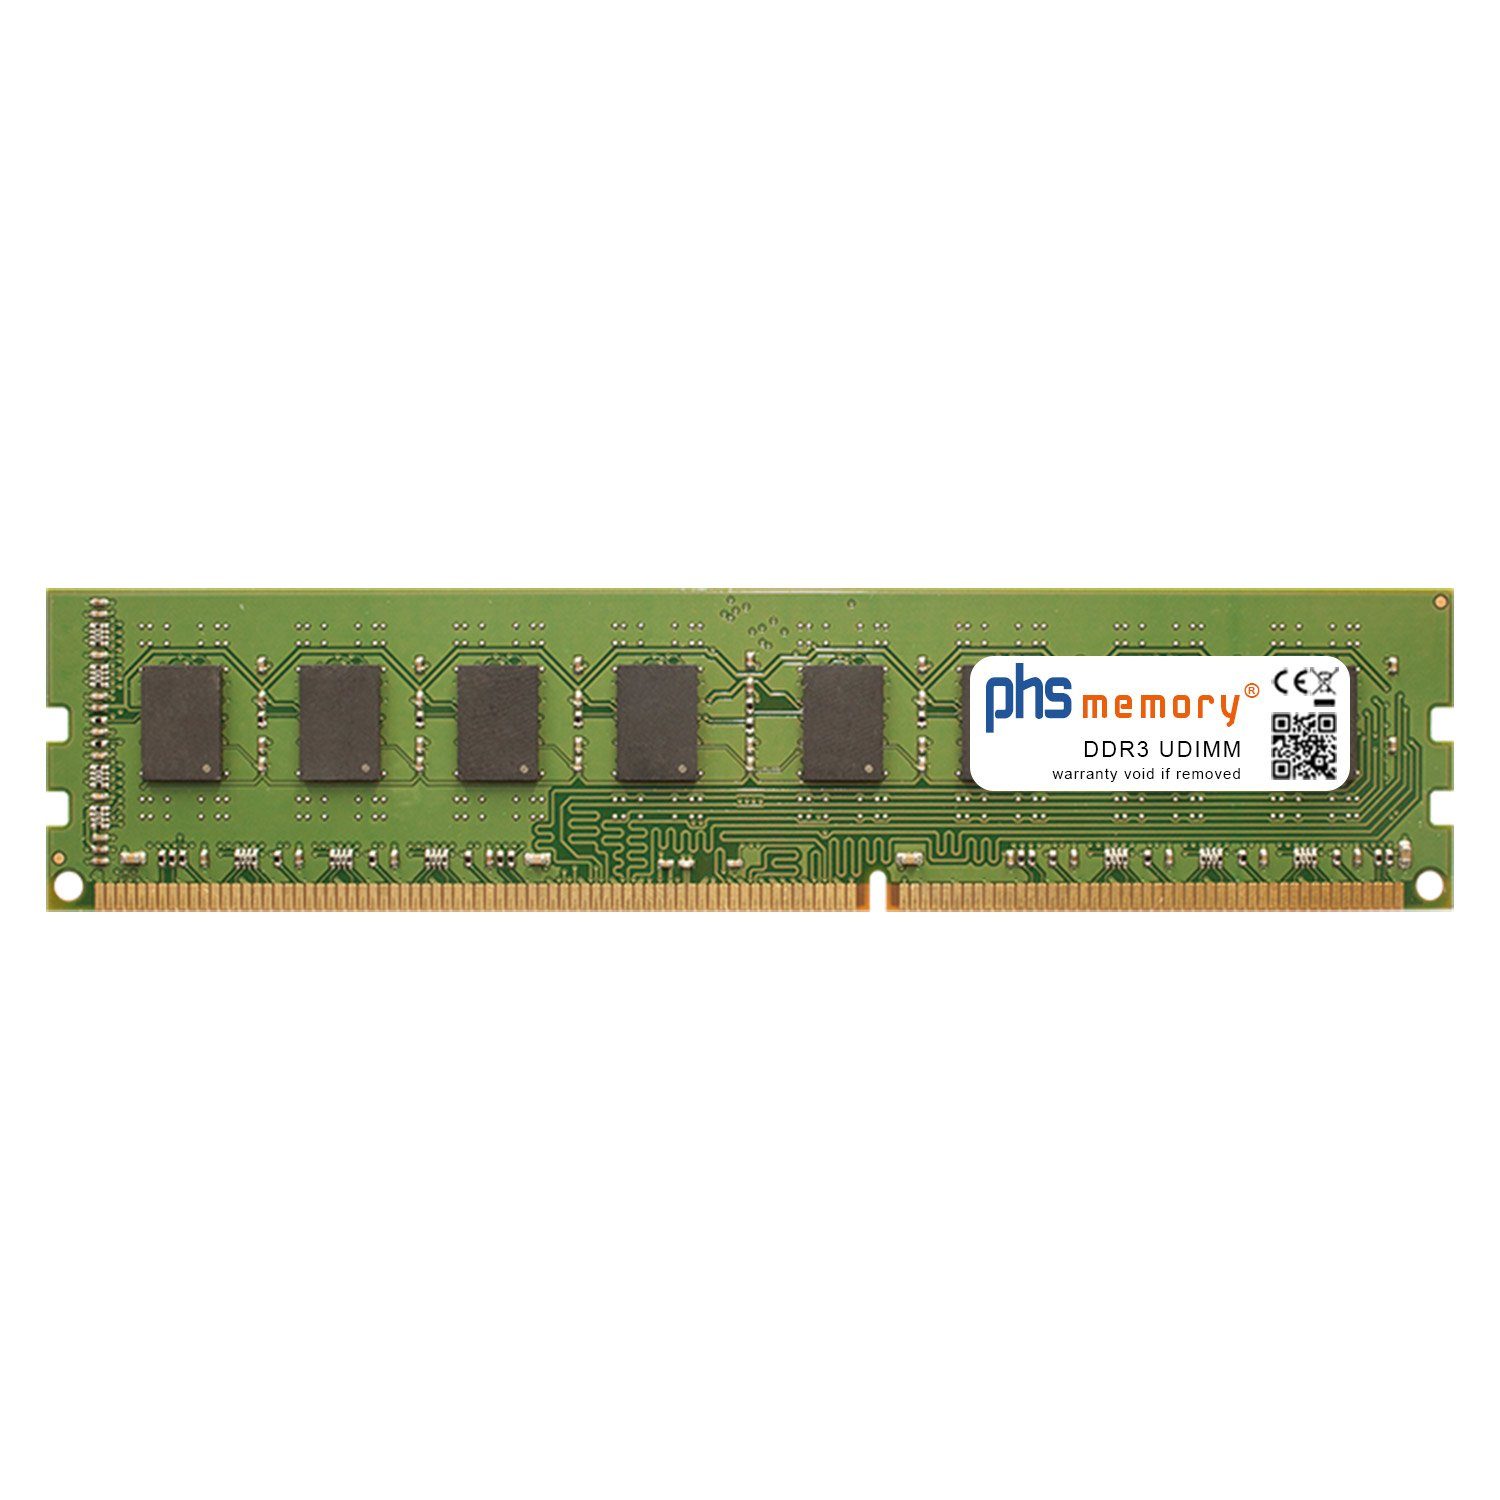 PHS-memory RAM für Asus Z97-A Arbeitsspeicher